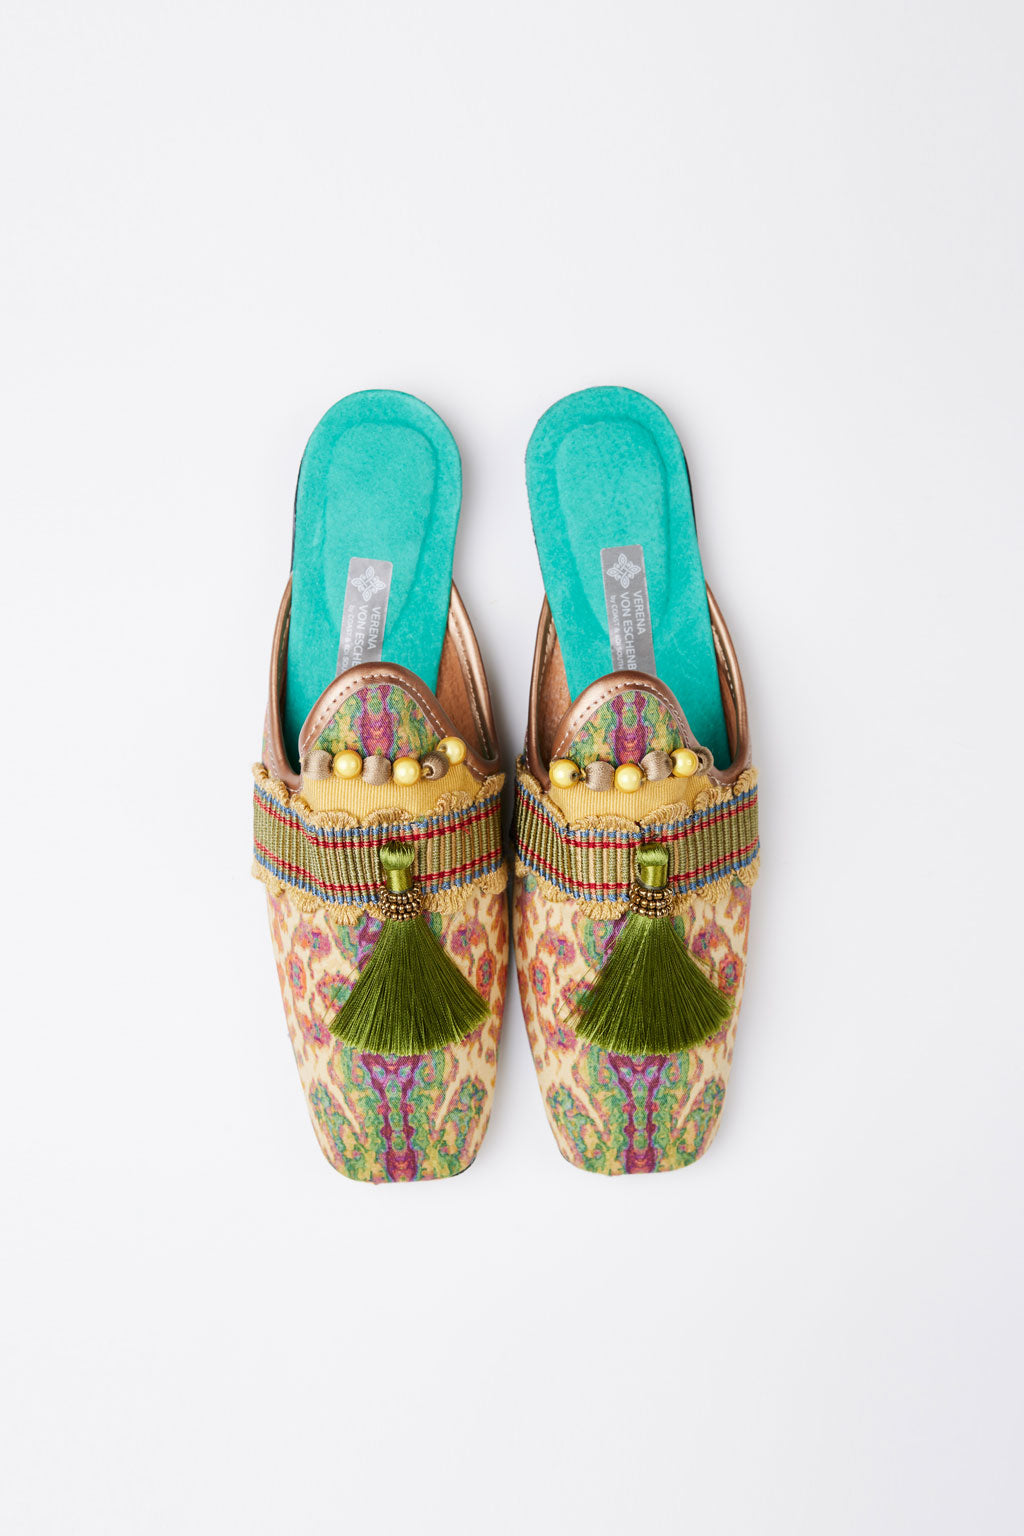 Slippers de luxe handmade Malaika Gr. 40